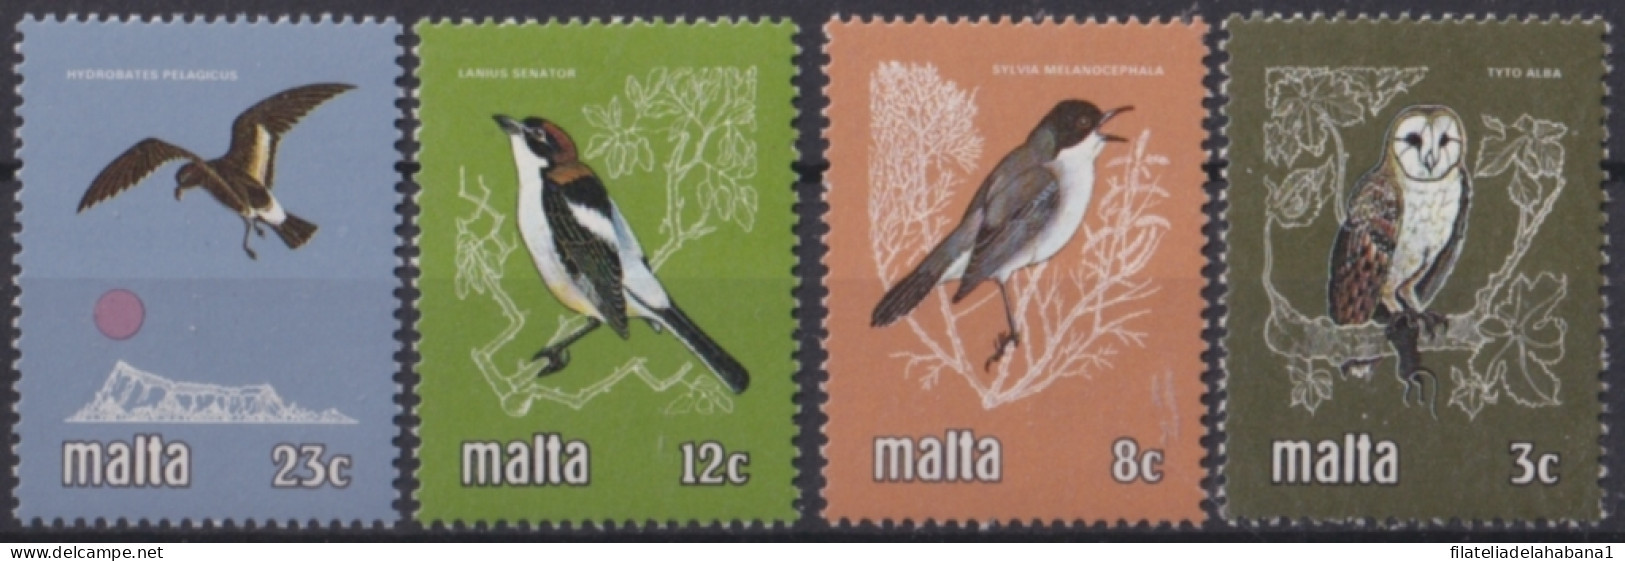 F-EX47947 MALTA MNH 1981 BIRD AVES PAJAROS OISEAUX OWL.  - Verzamelingen, Voorwerpen & Reeksen